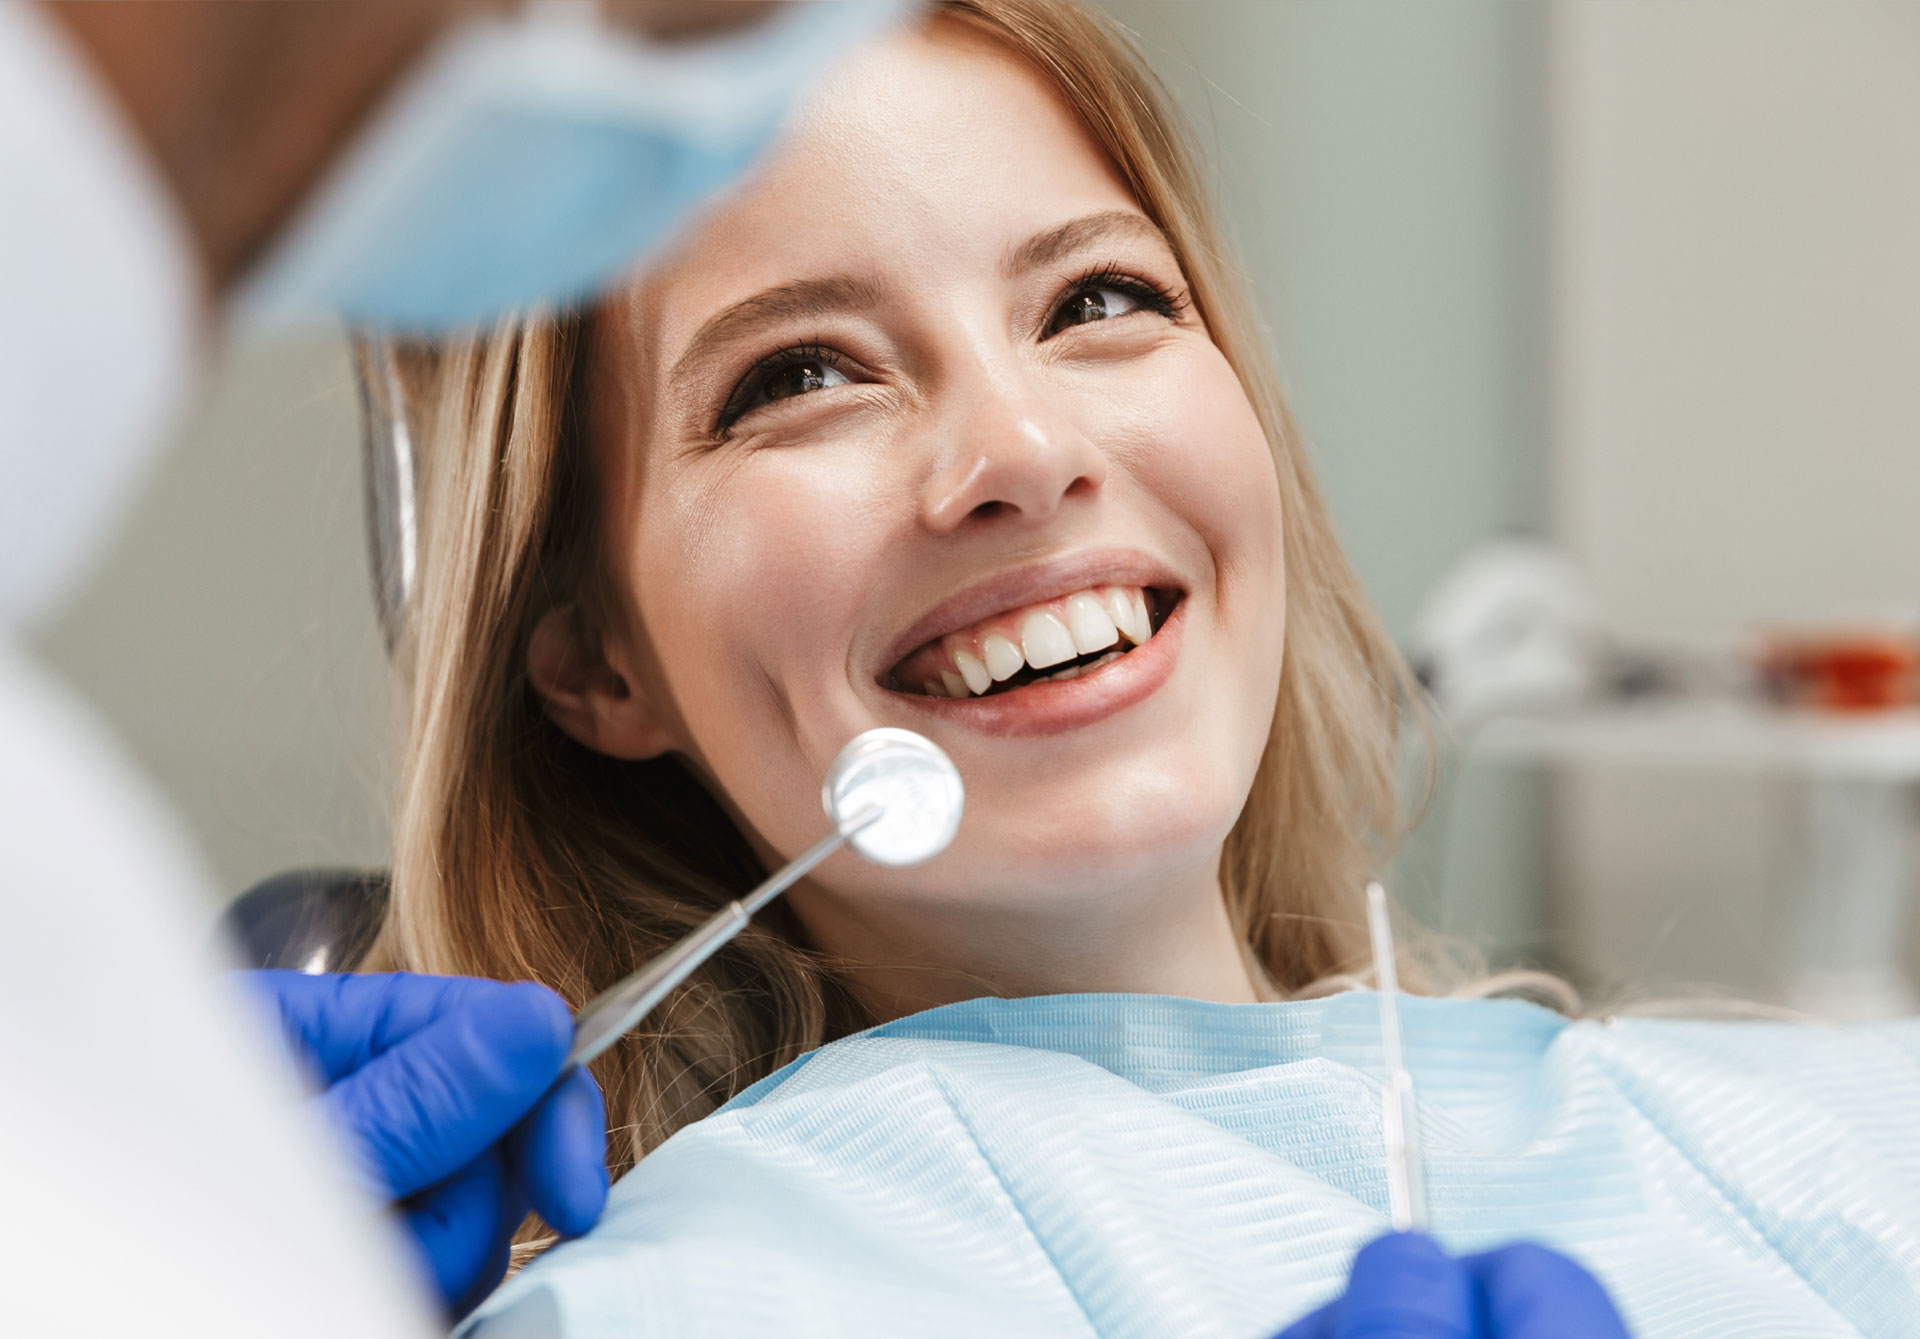 sorriso poltrona odontoiatrica dentista dental